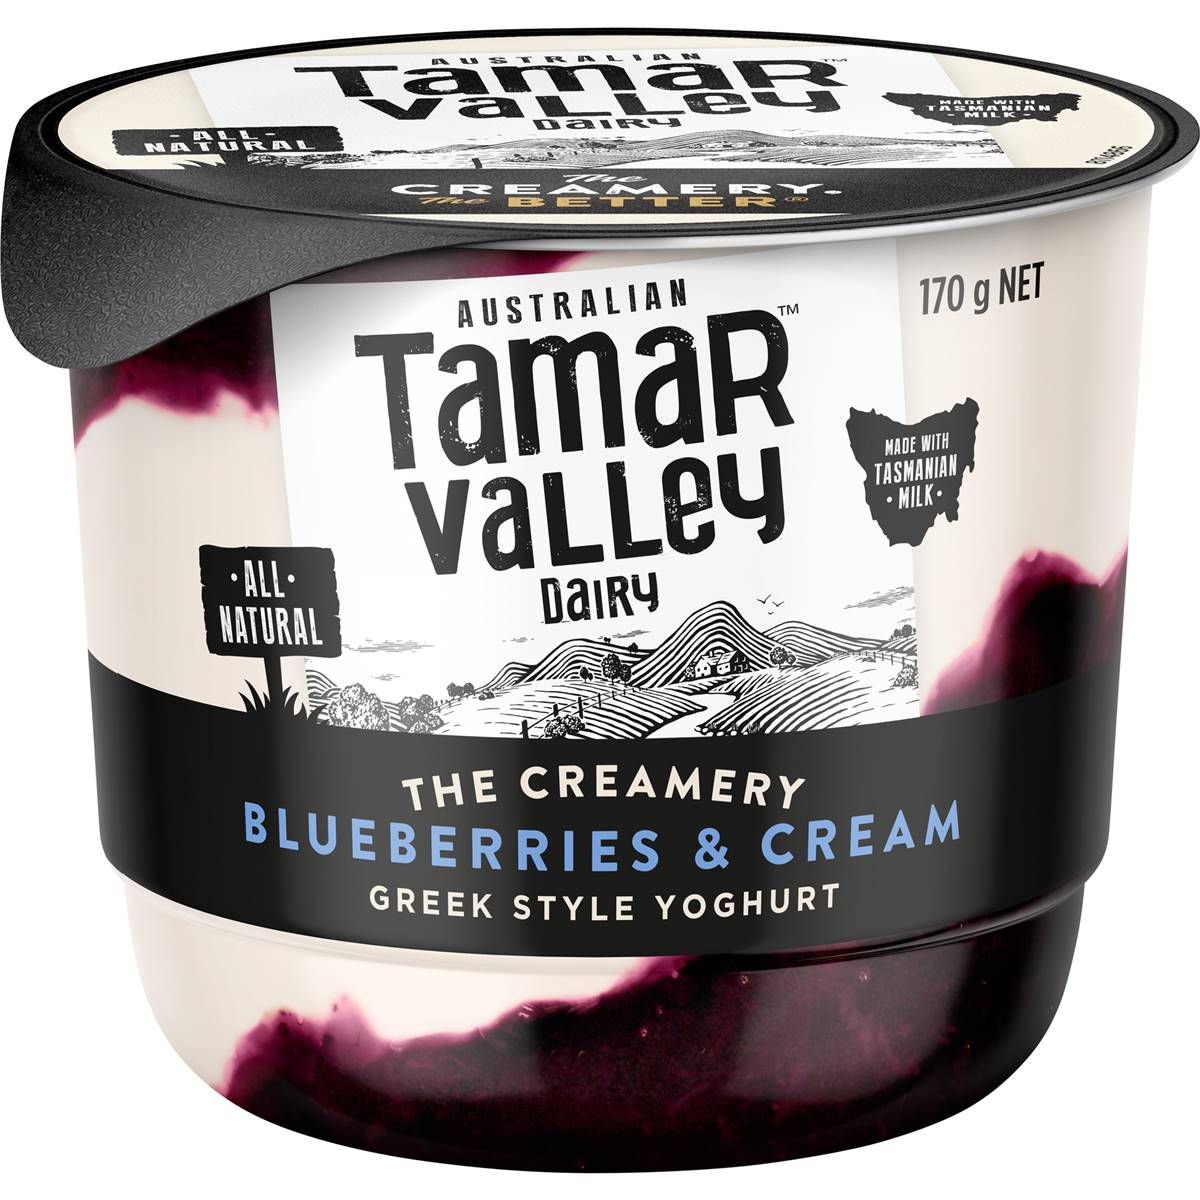 Calories in Tamar Valley The Creamery Greek Style Yoghurt Blueberries & Cream